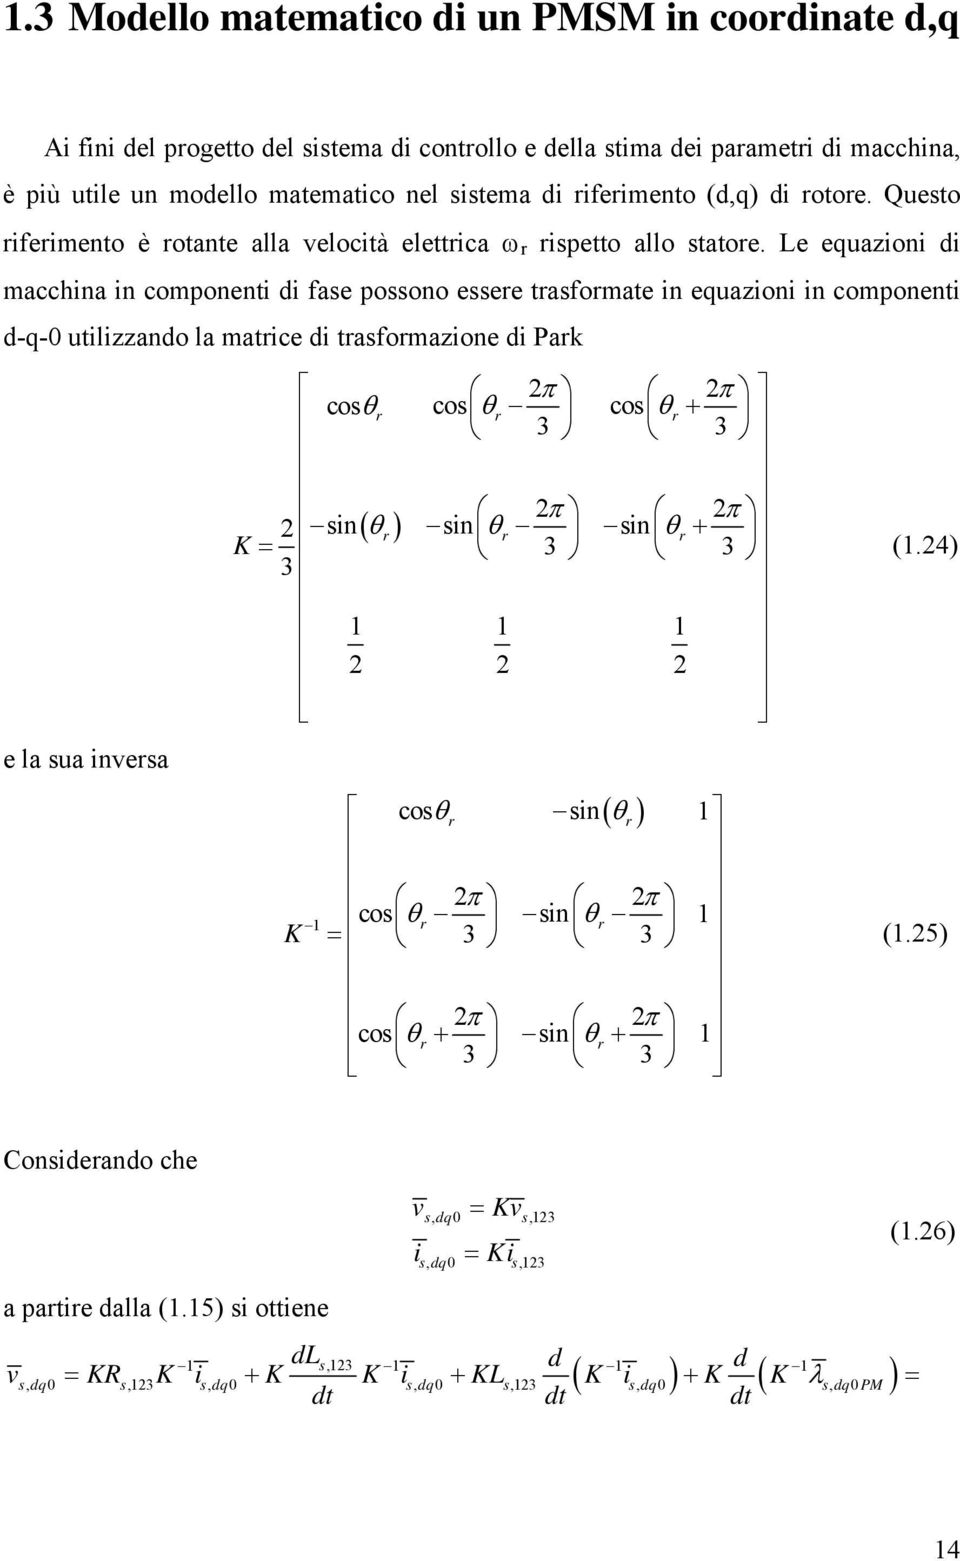 Le equazioni di macchina in componenti di fae poono eee tafomate in equazioni in componenti d-q-0 utilizzando la matice di tafomazione di Pak e la ua invea π π coθ co θ